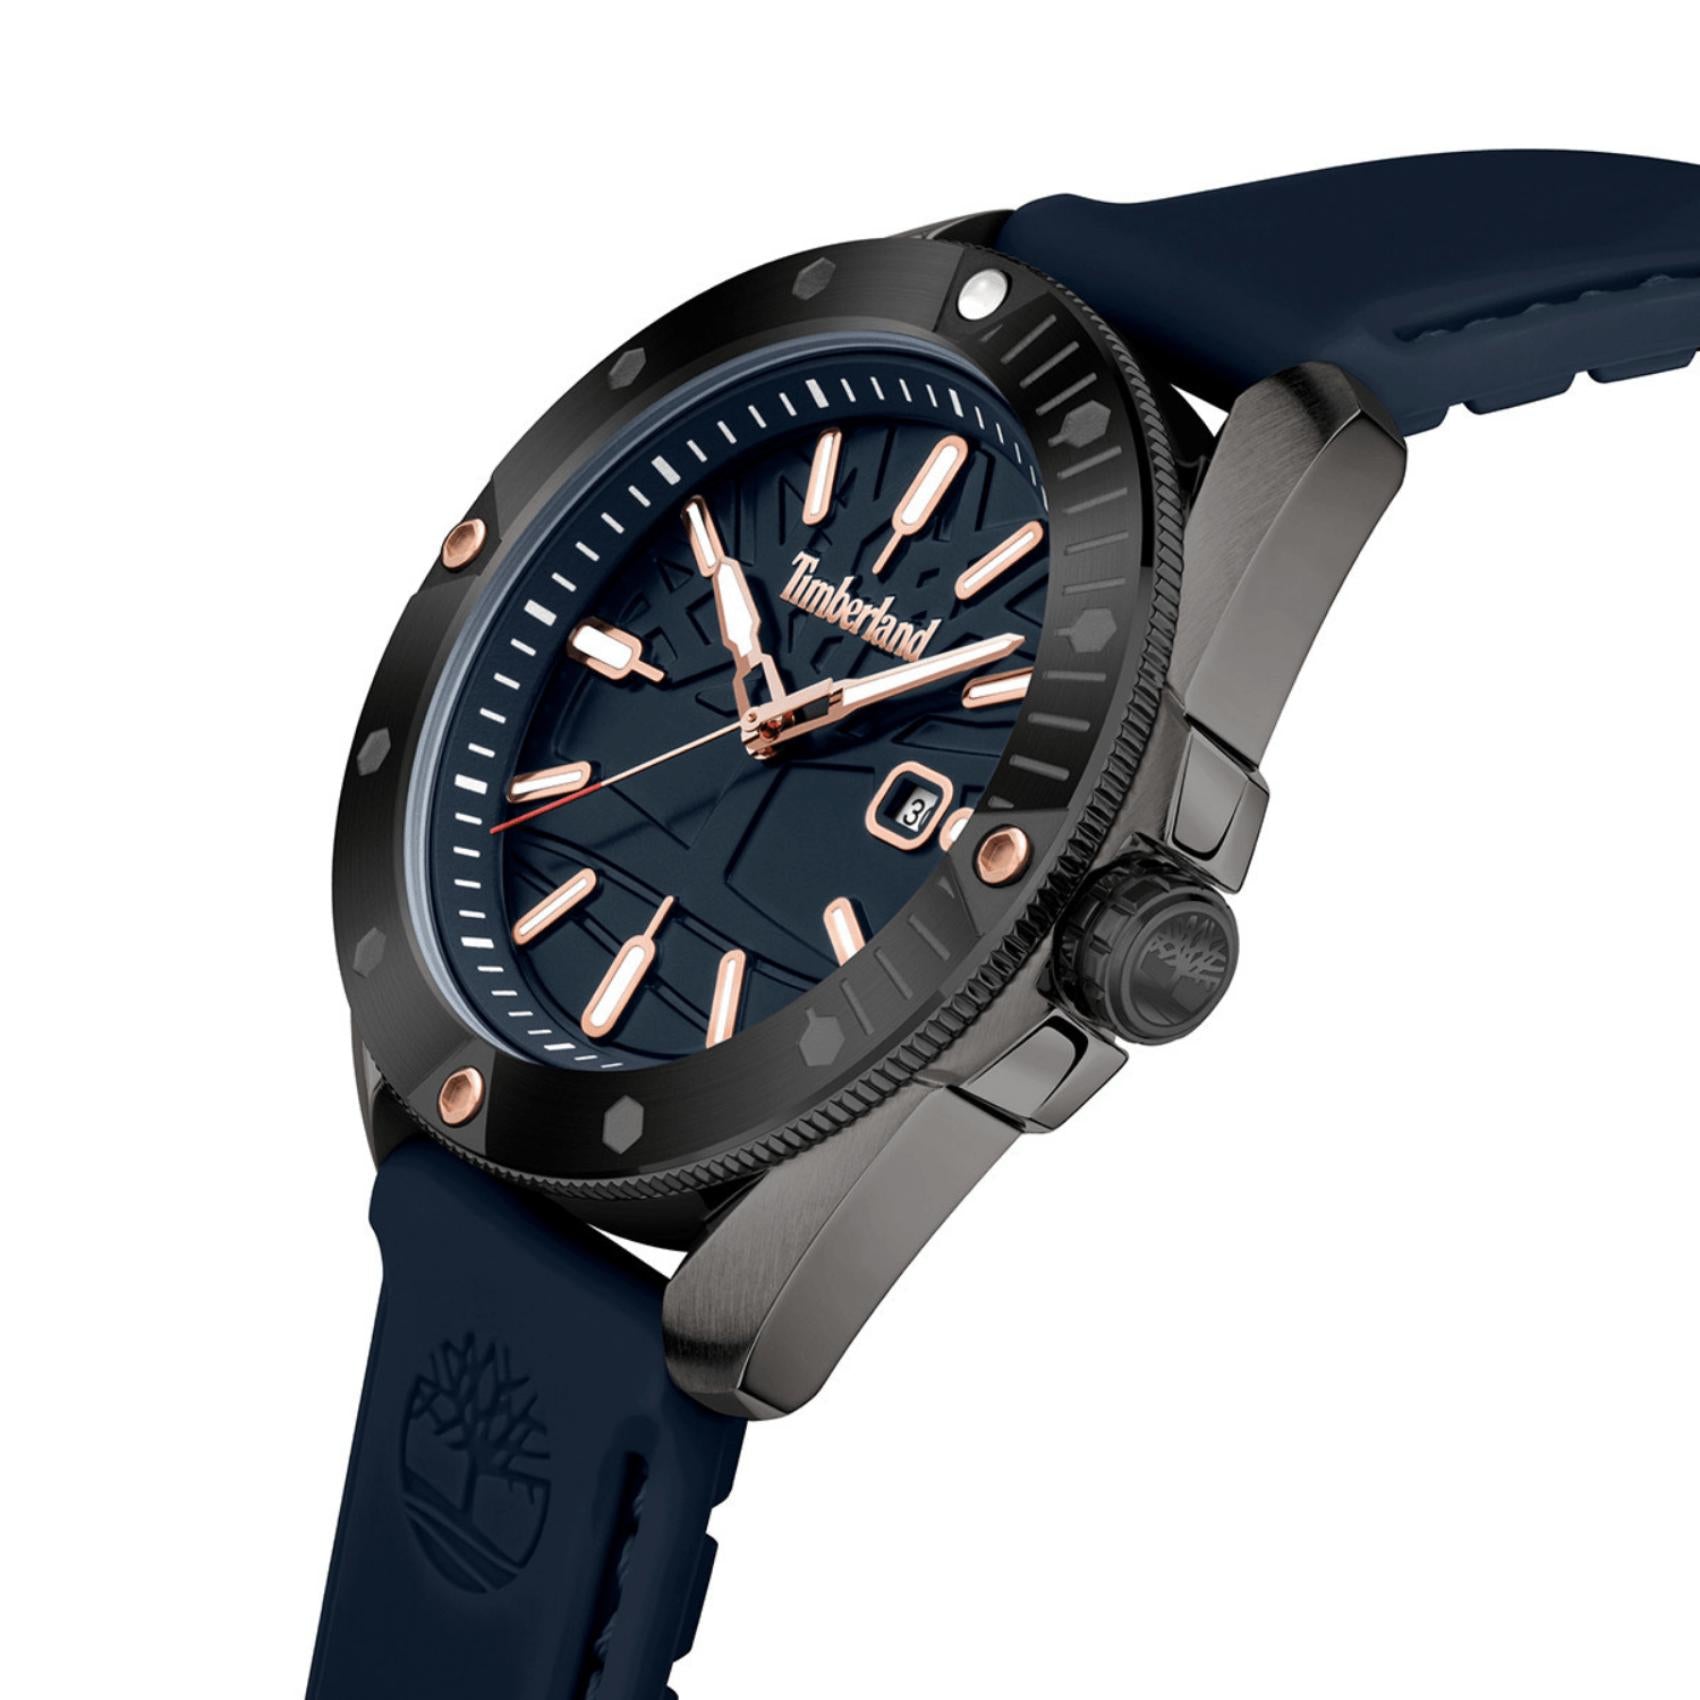 Ανδρικό ρολόι Timberland Carrigan TDWGN2102901 με μπλε καουτσούκ λουράκι και μπλε καντράν διαμέτρου 4mm με ένδειξη ημερομηνίας.